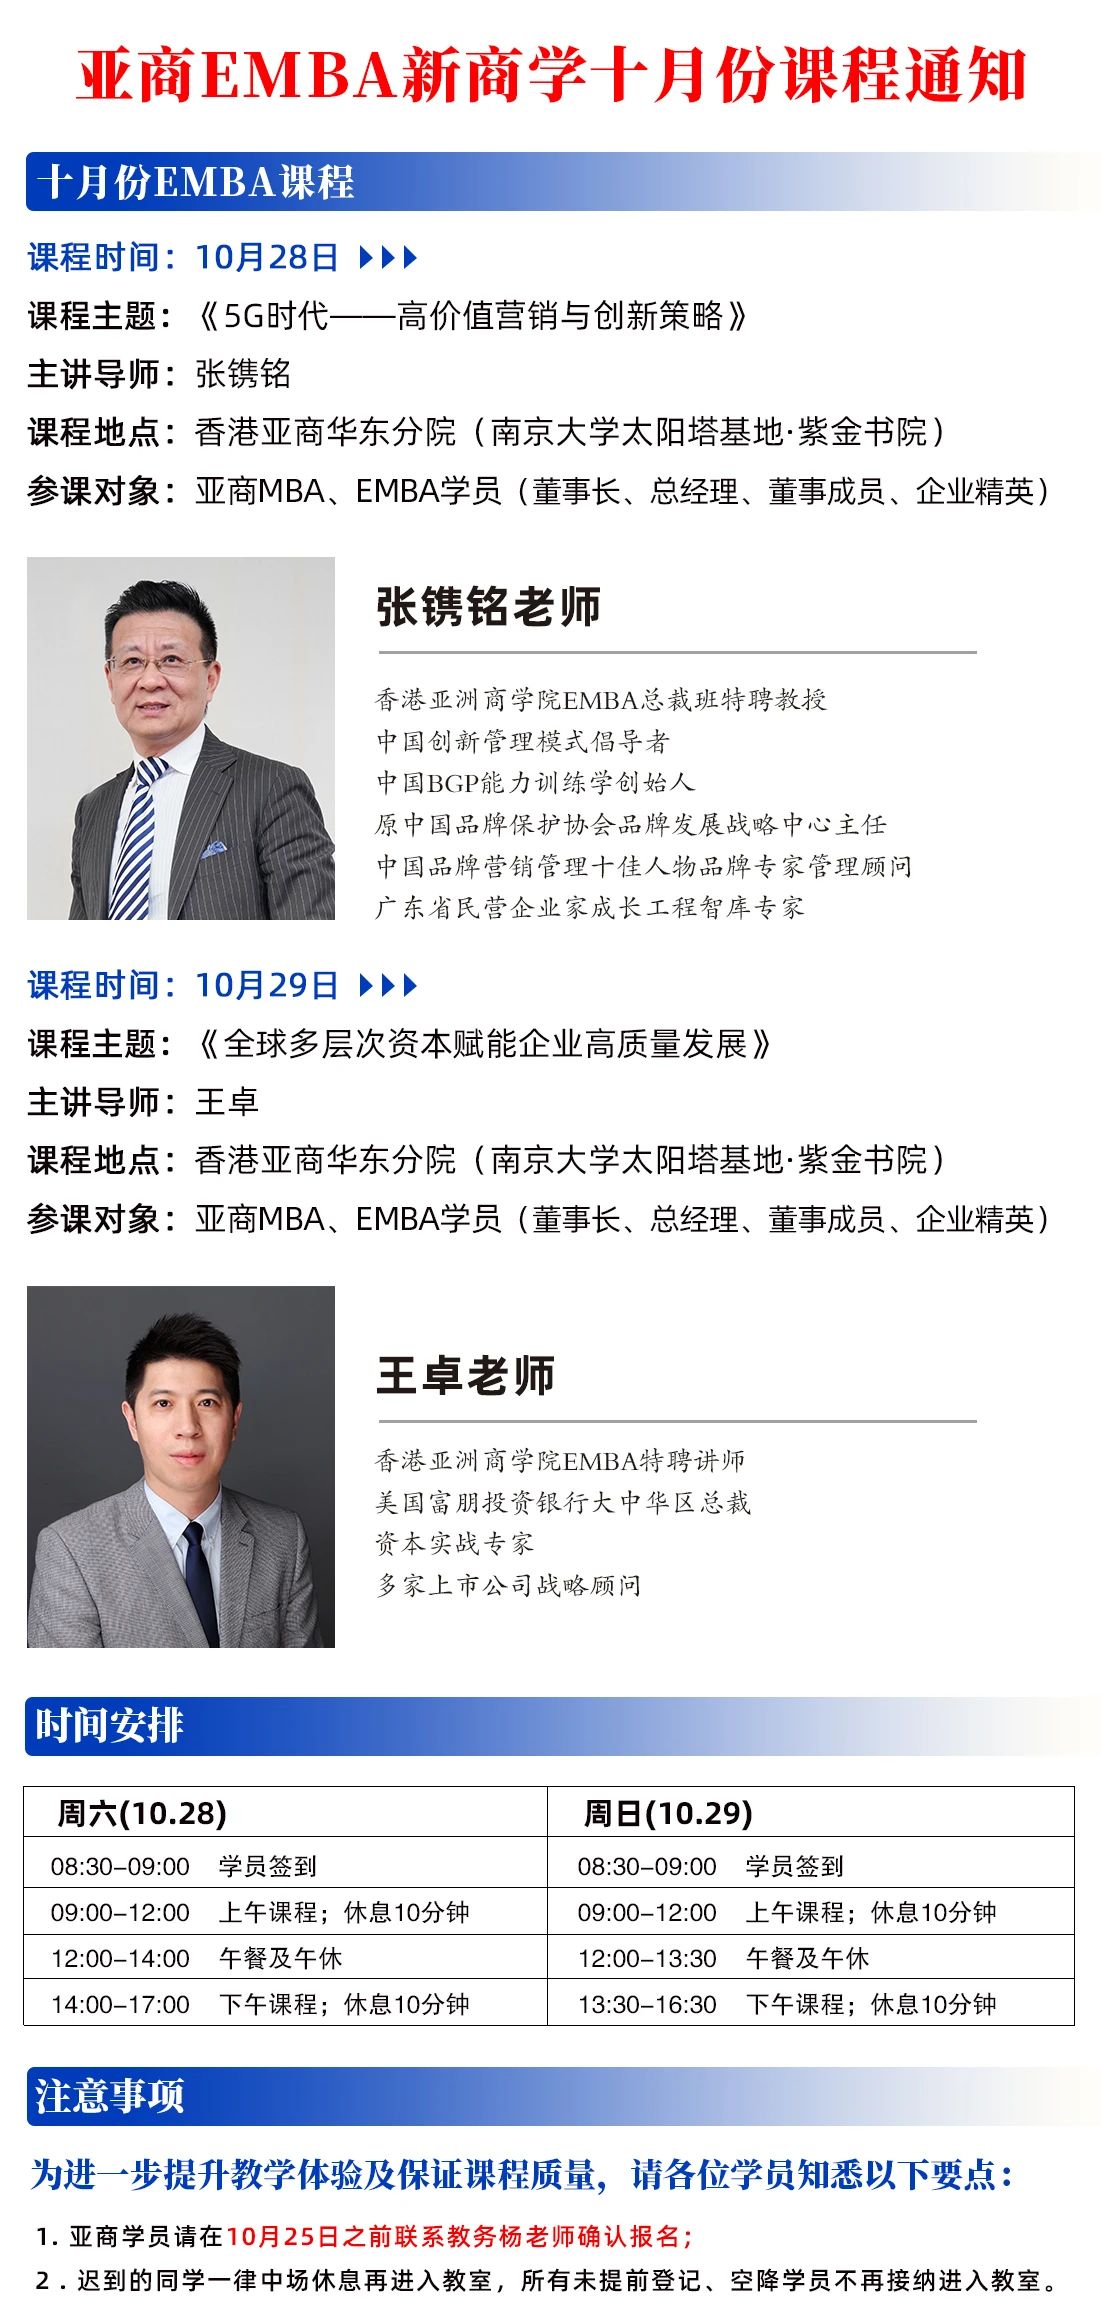 香港亚洲商学院EMBA十月份课程通知